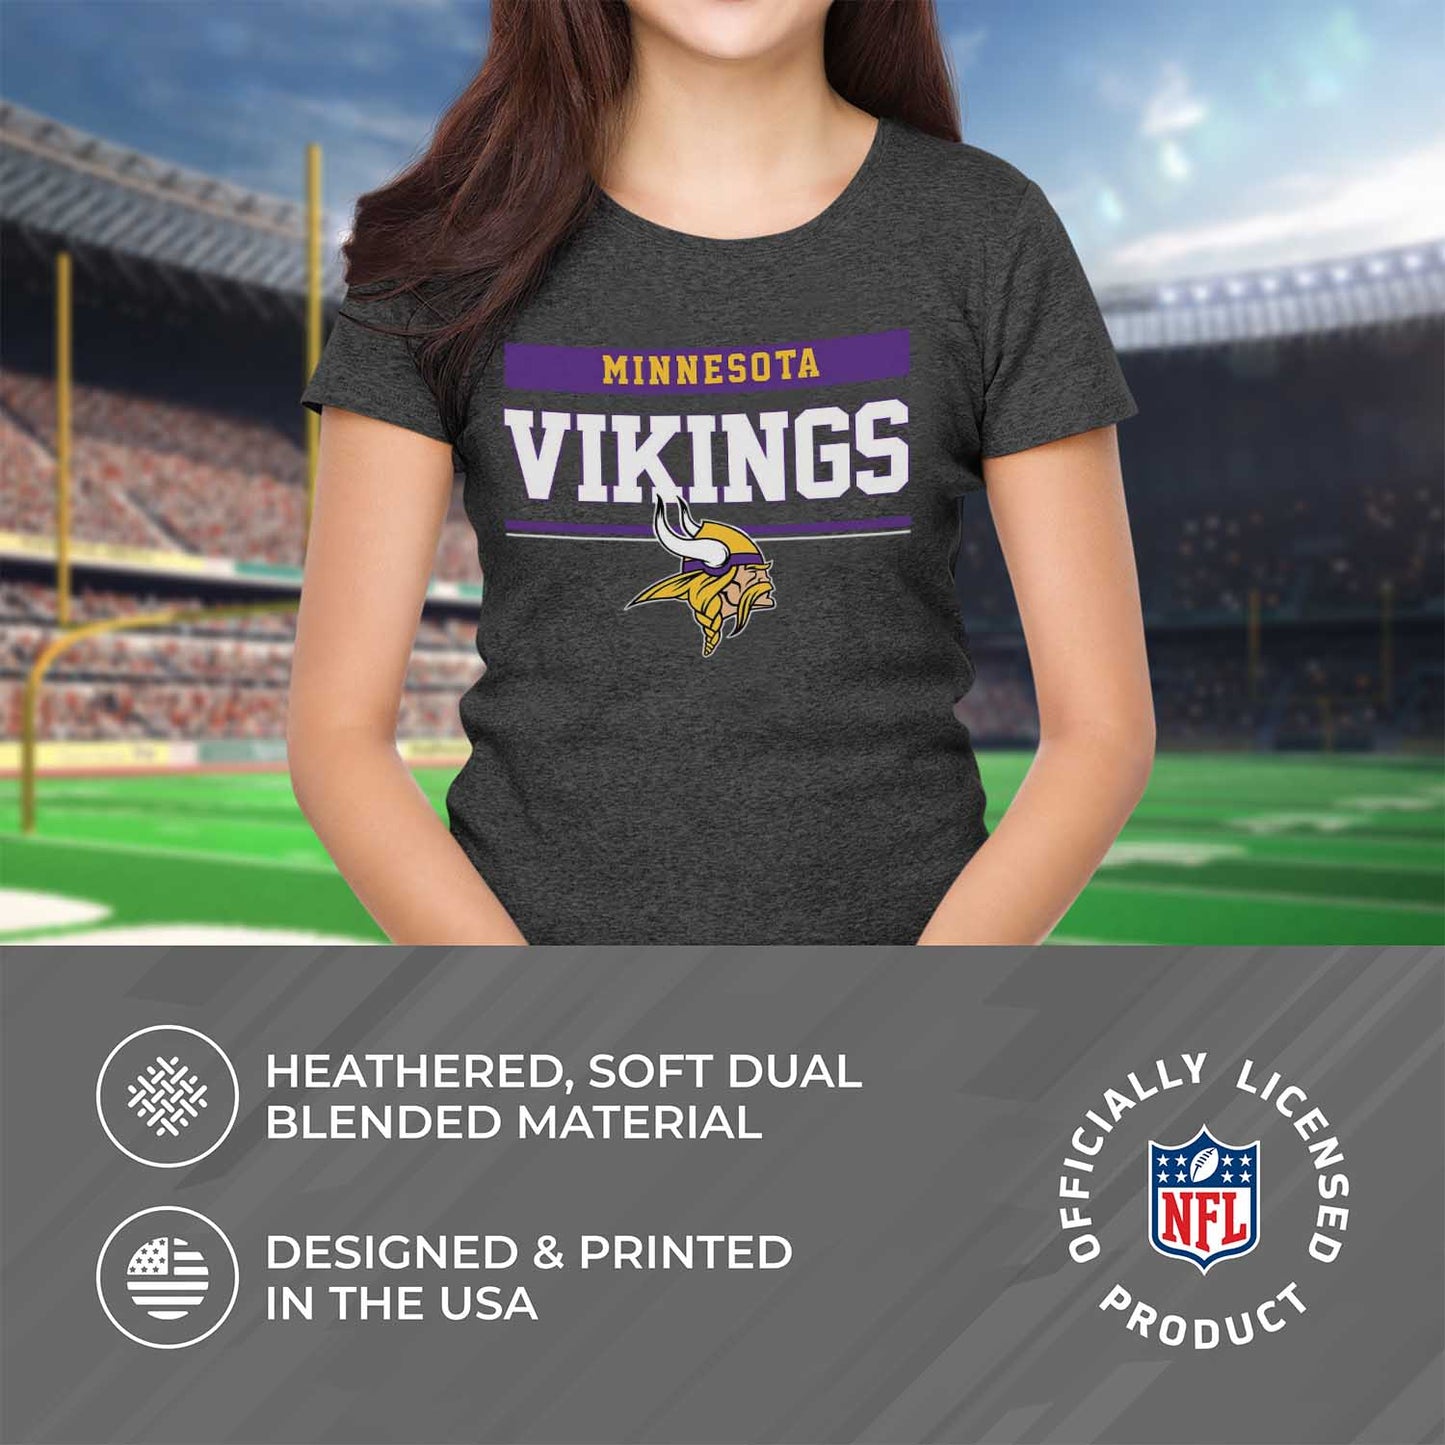 Minnesota Vikings NFL Women's Team Block Charcoal Tagless T-Shirt - Charcoal